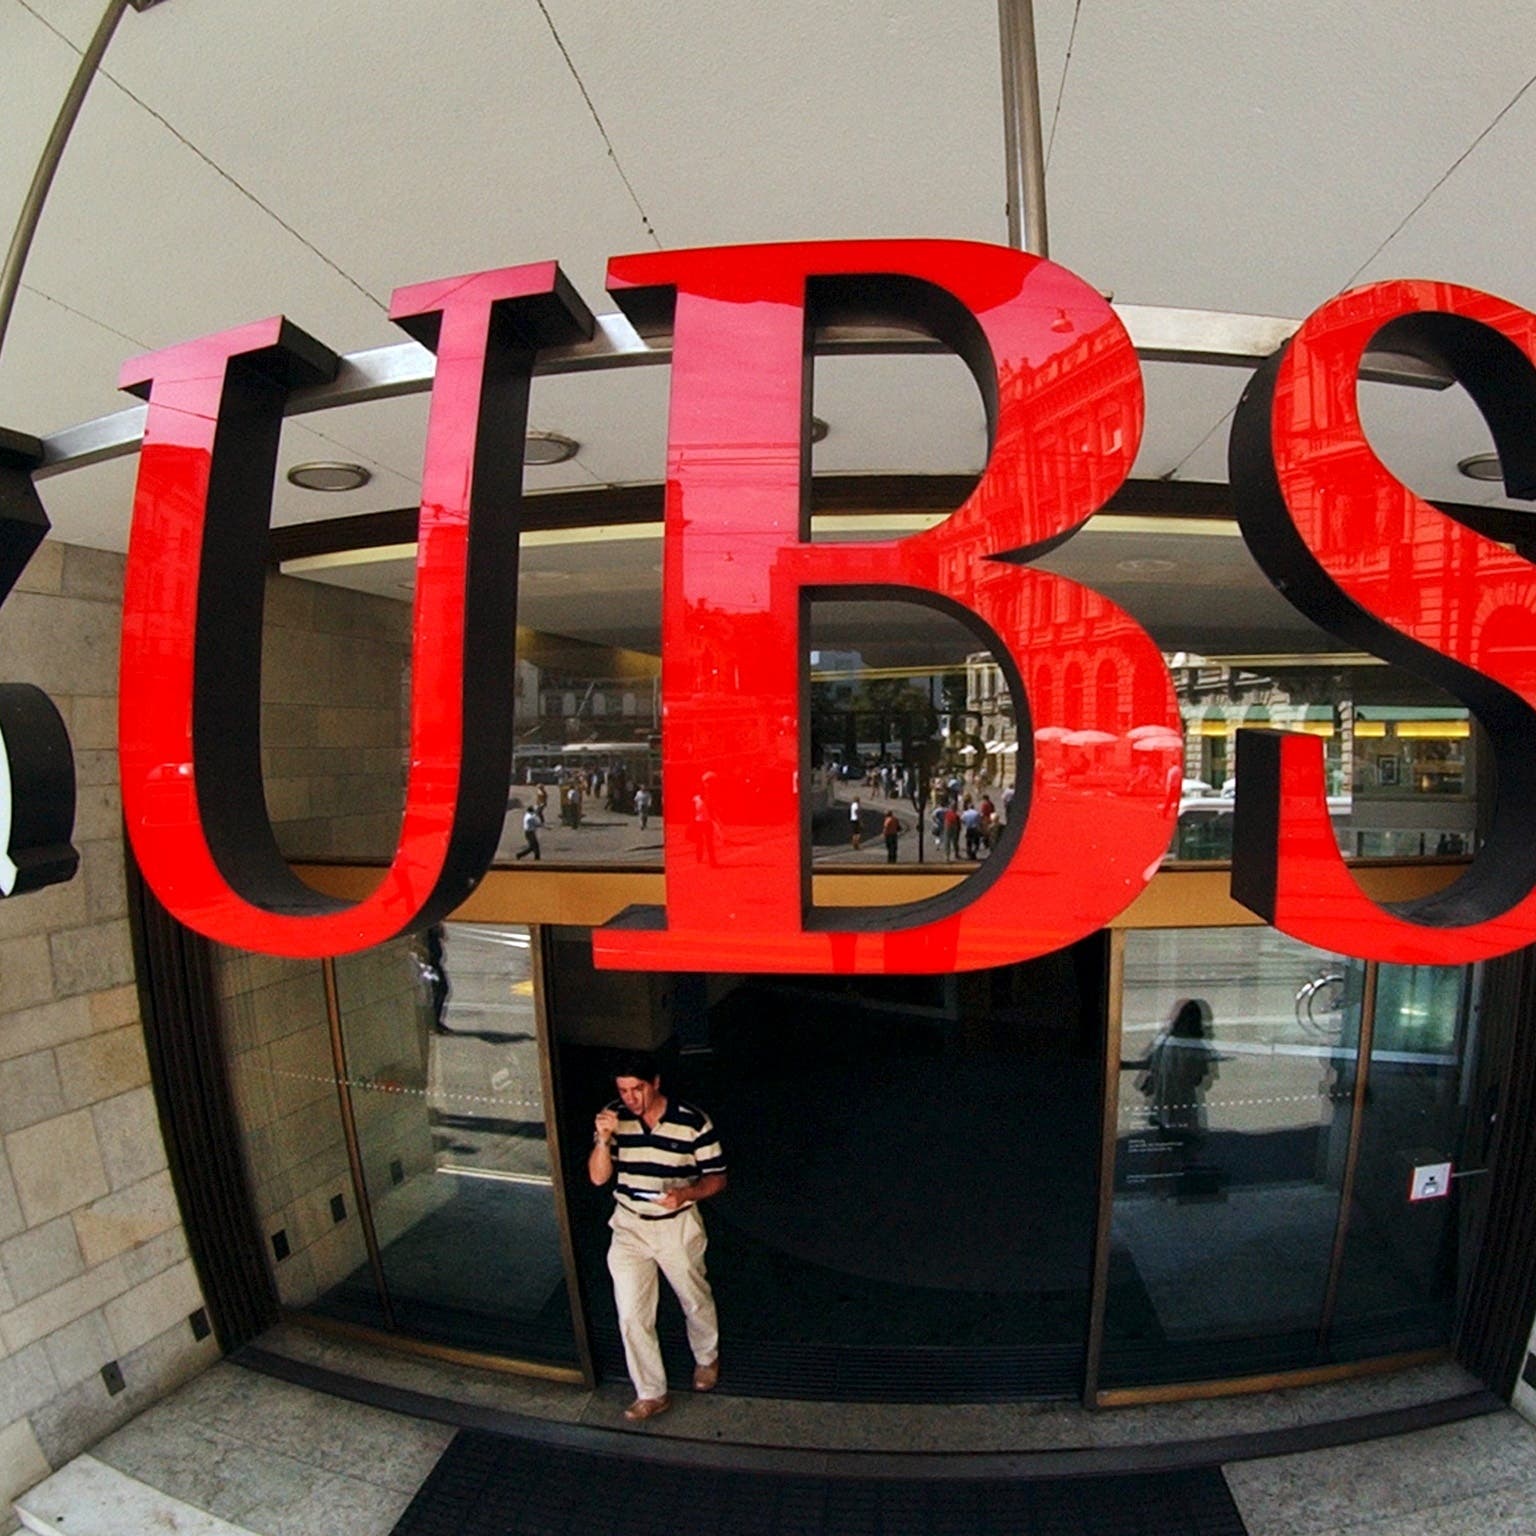 انهيار "أركيغوس" يسدد ضربة مفاجئة لأرباح "UBS"!